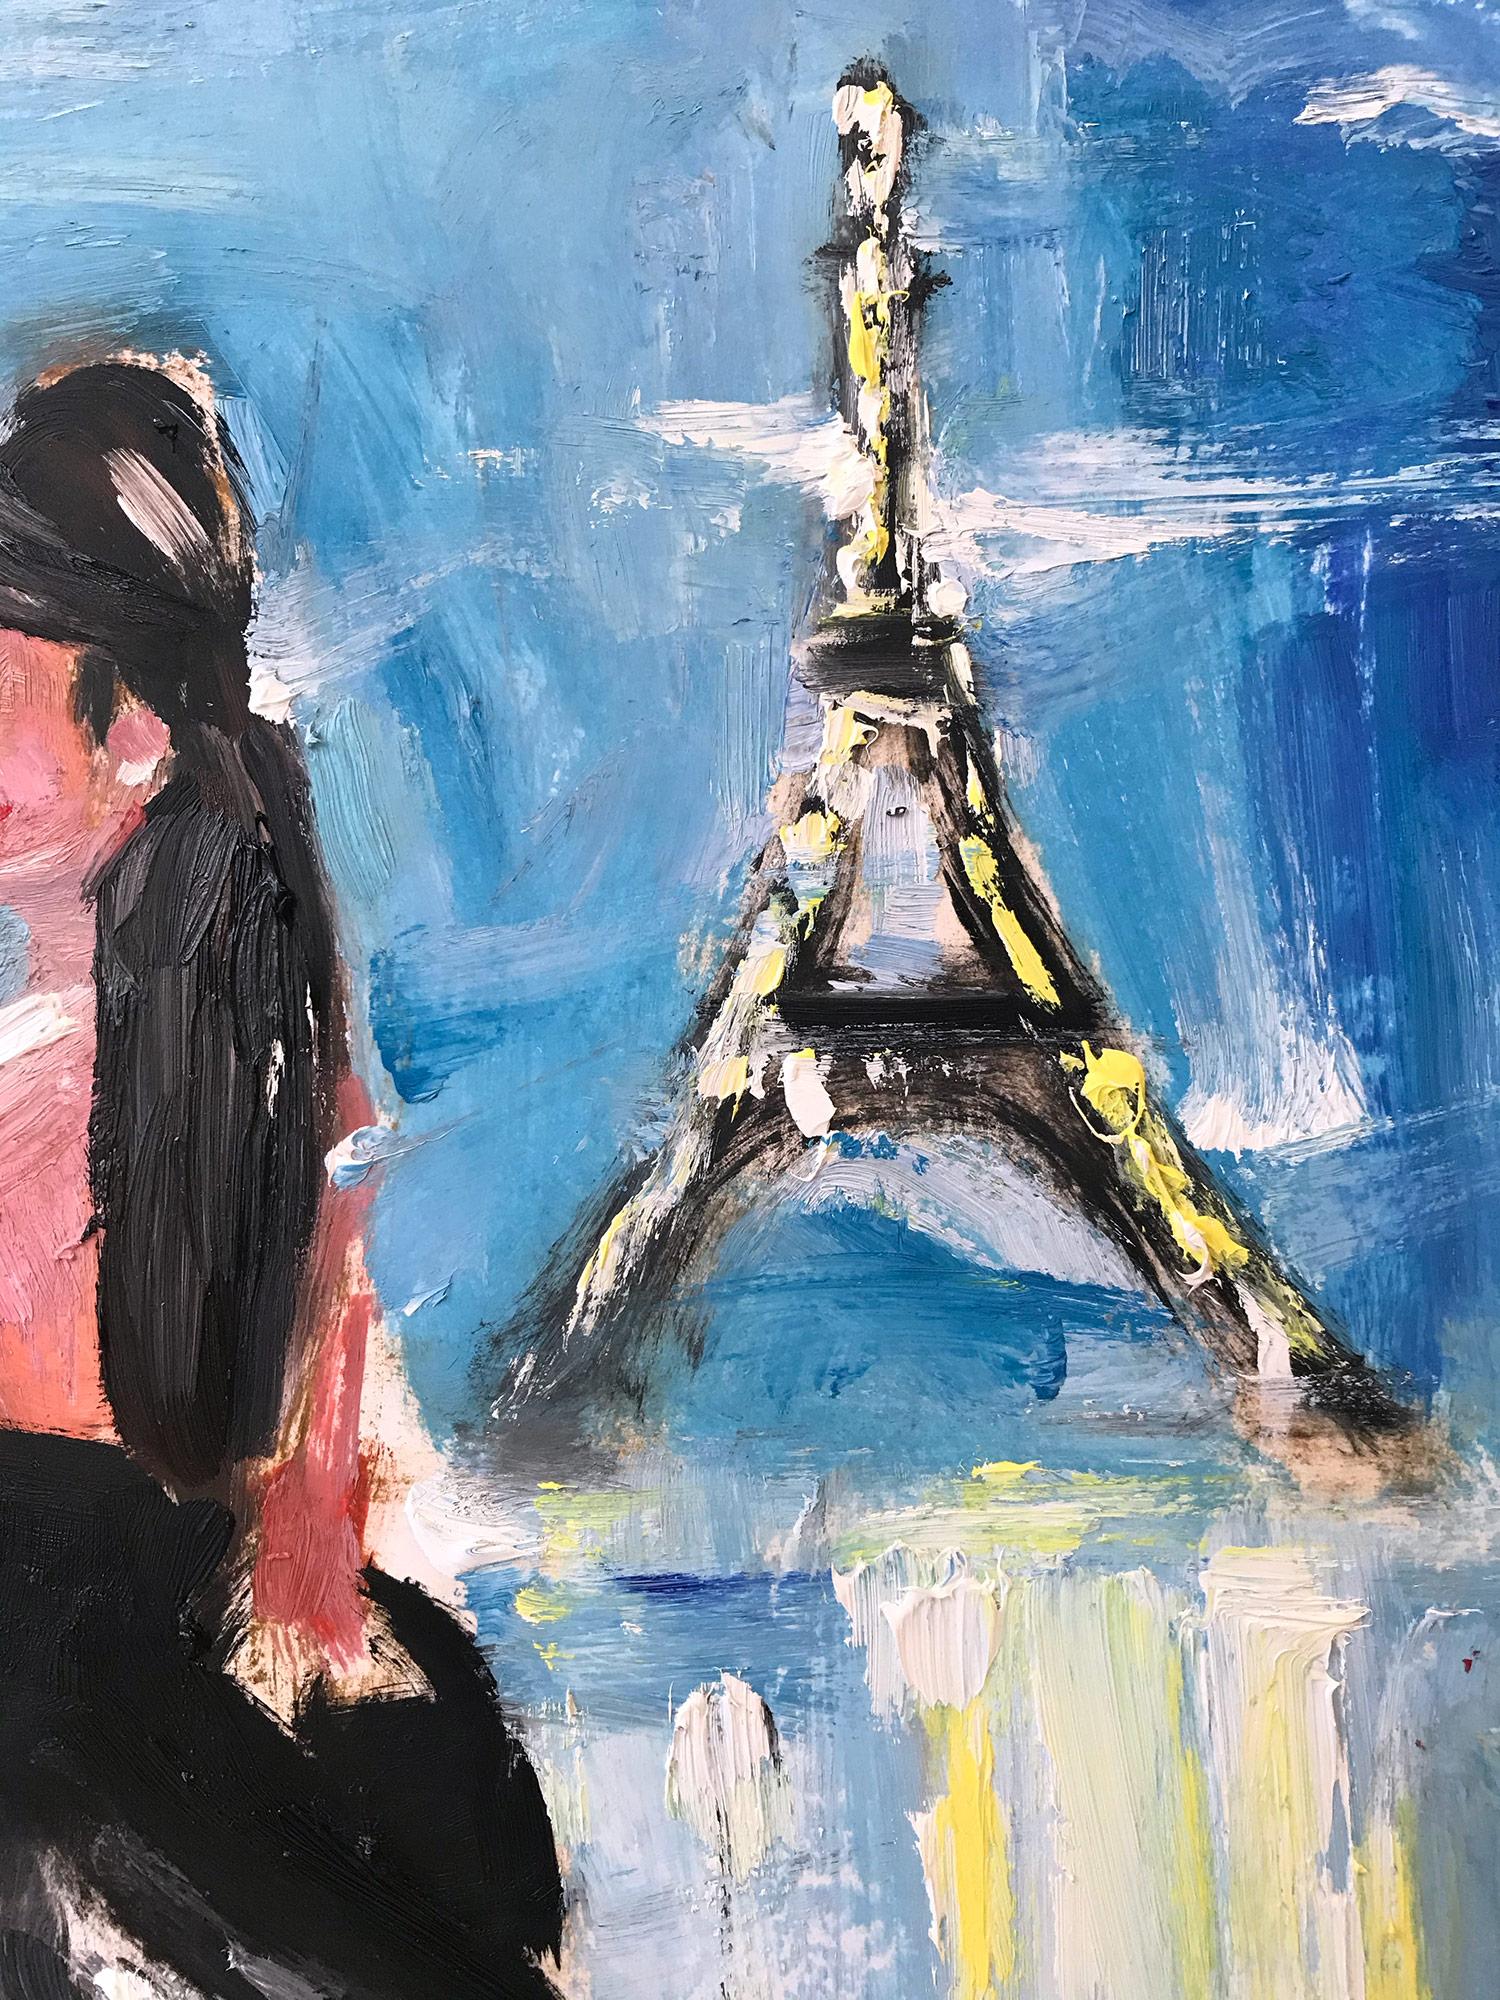 emily in paris painting